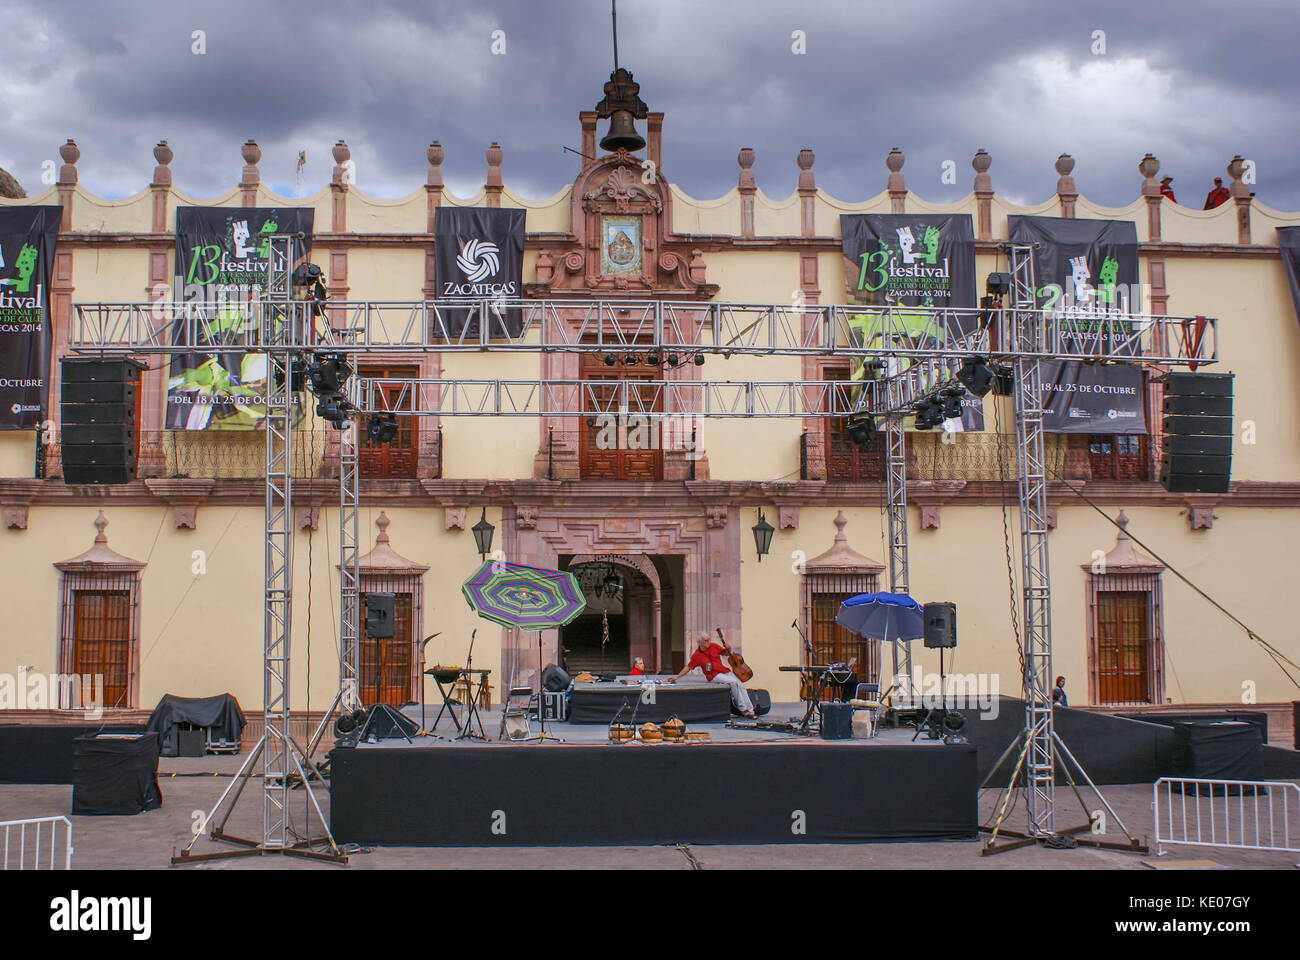 Zacatecas, Mexiko - 19. Oktober 2014: Die Bühne ist für eine der vielen kulturellen Festivals in der wunderschönen Altstadt von Zacatecas, Mexiko Stockfoto